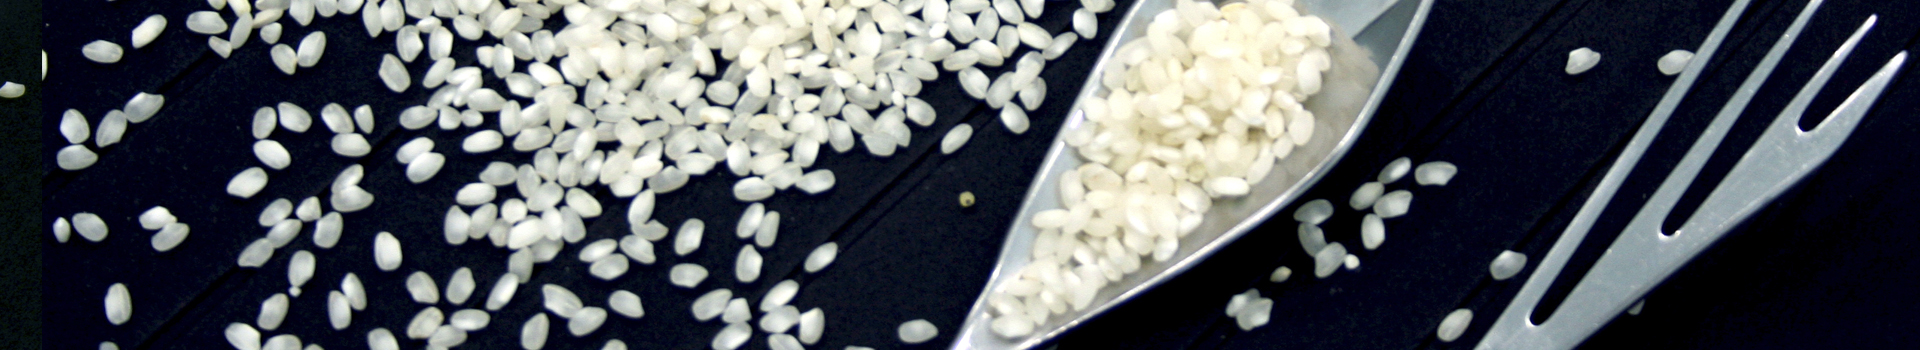 ABC Rice, arròs de qualitat per a professionals